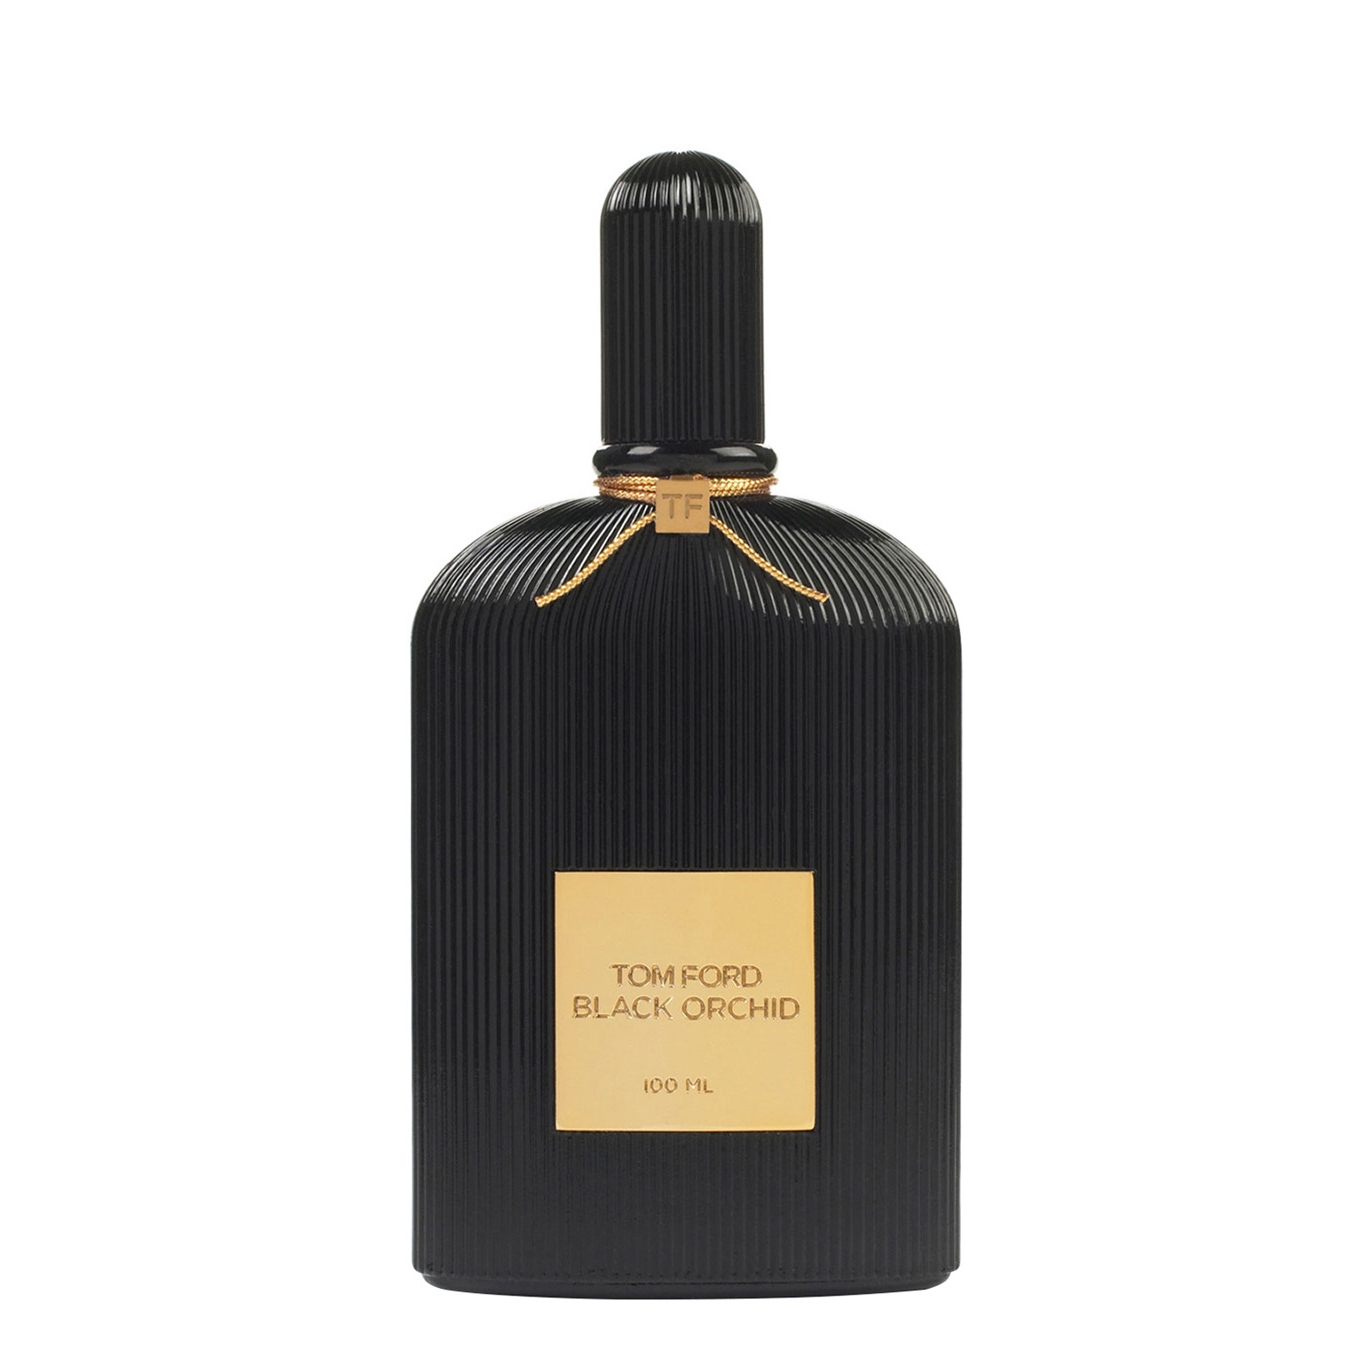 Tom Ford Black Orchid Eau De Parfum 100ml - Harvey Nichols